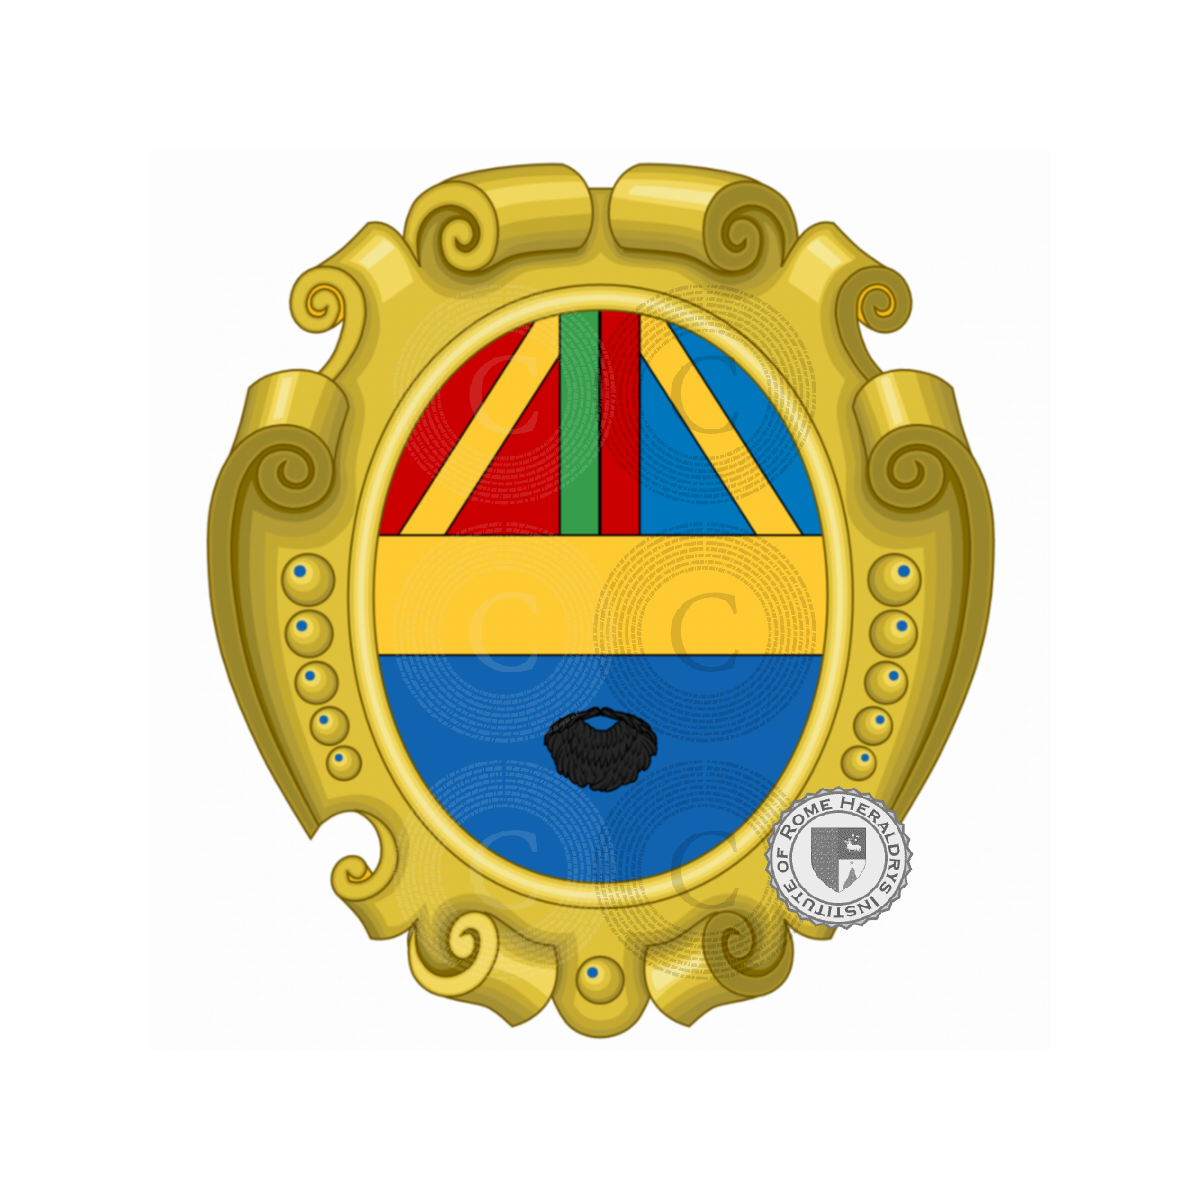 Wappen der FamilieBarbato, Barbuto